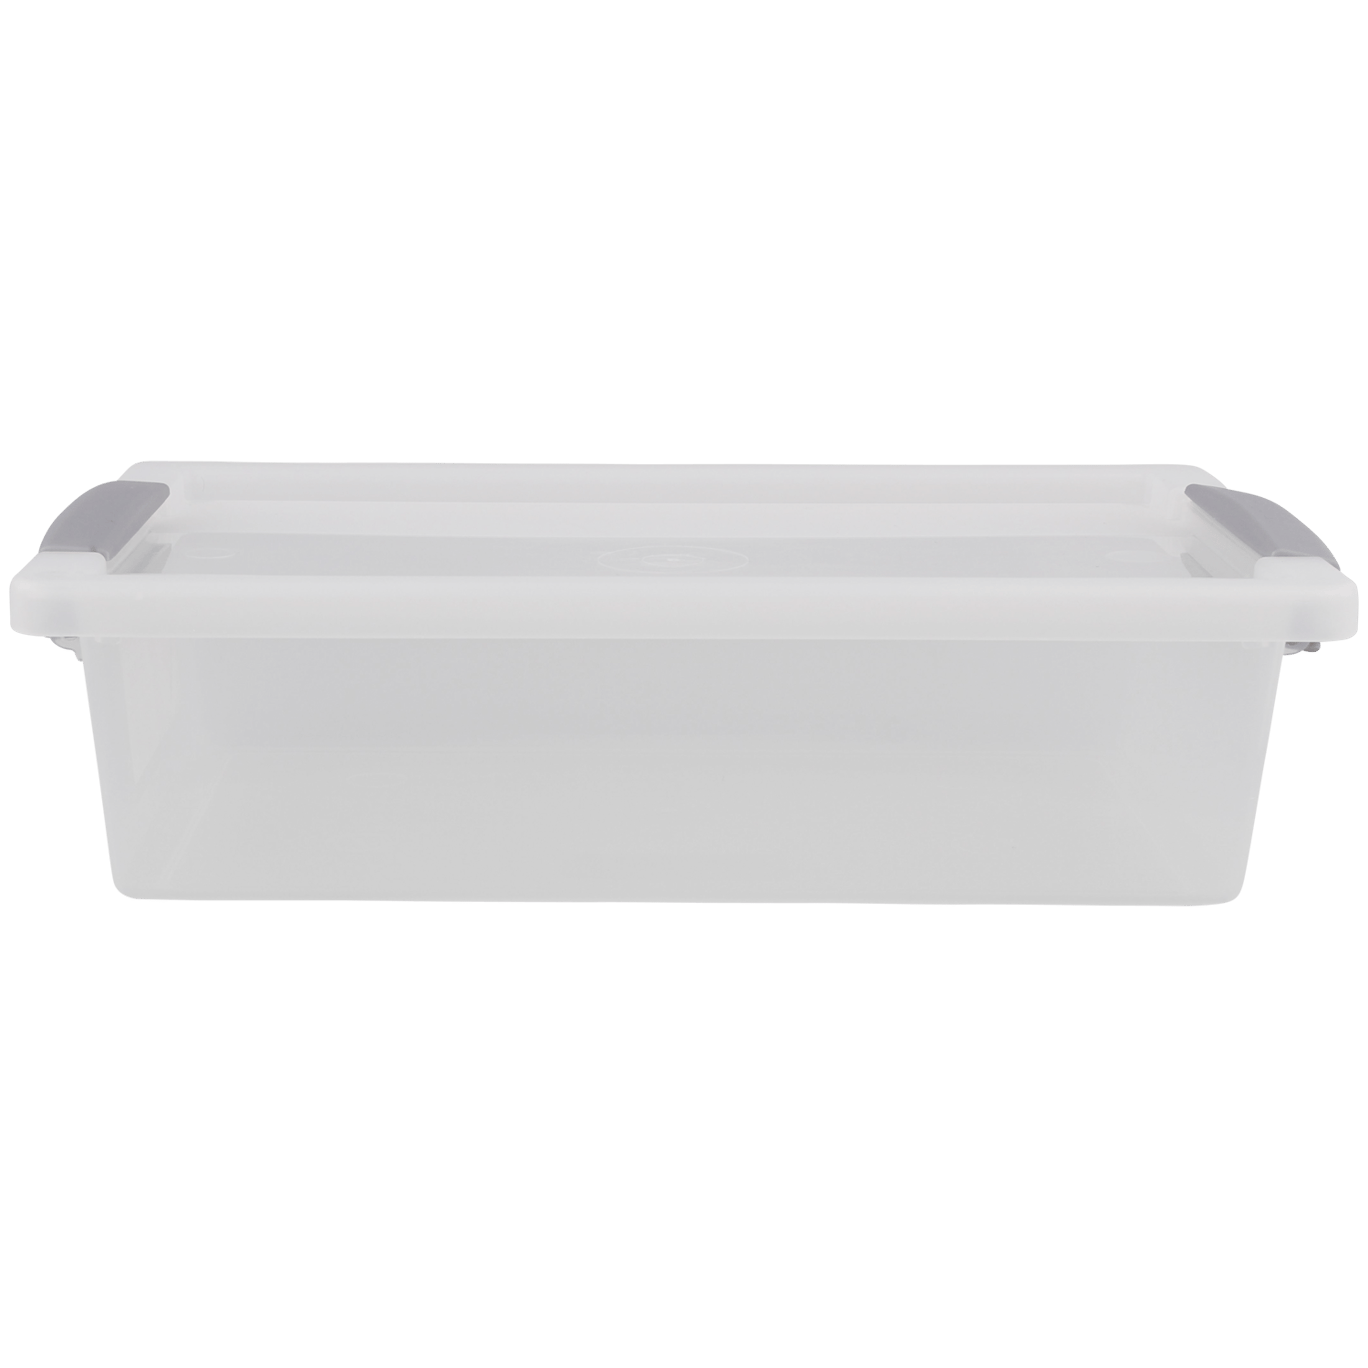 Starplast Caja de plástico con Cerradura para Almacenamiento de Jardín 280 L Cream/Green 